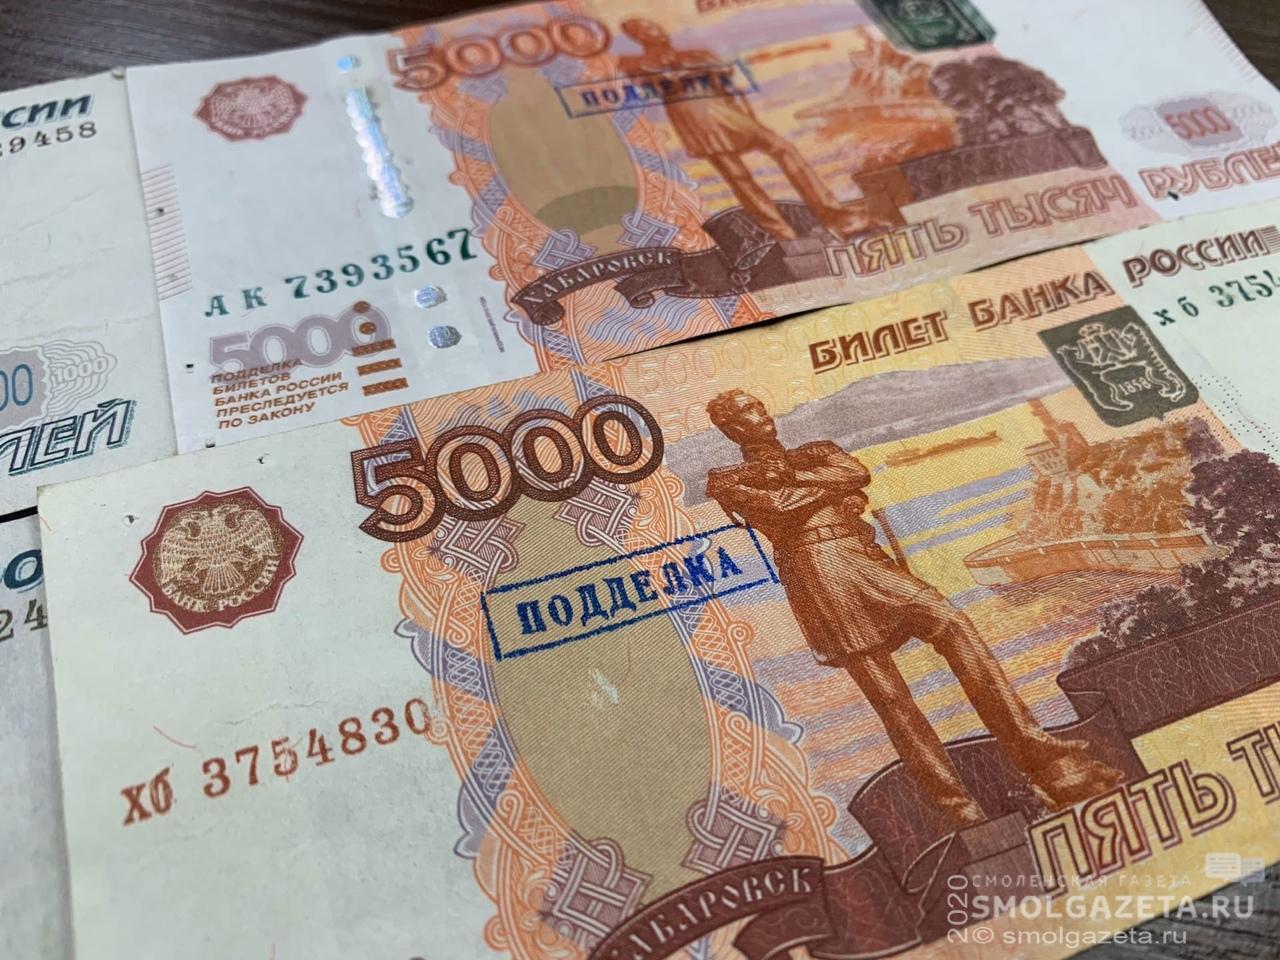 В банке Смоленска обнаружили поддельные деньги